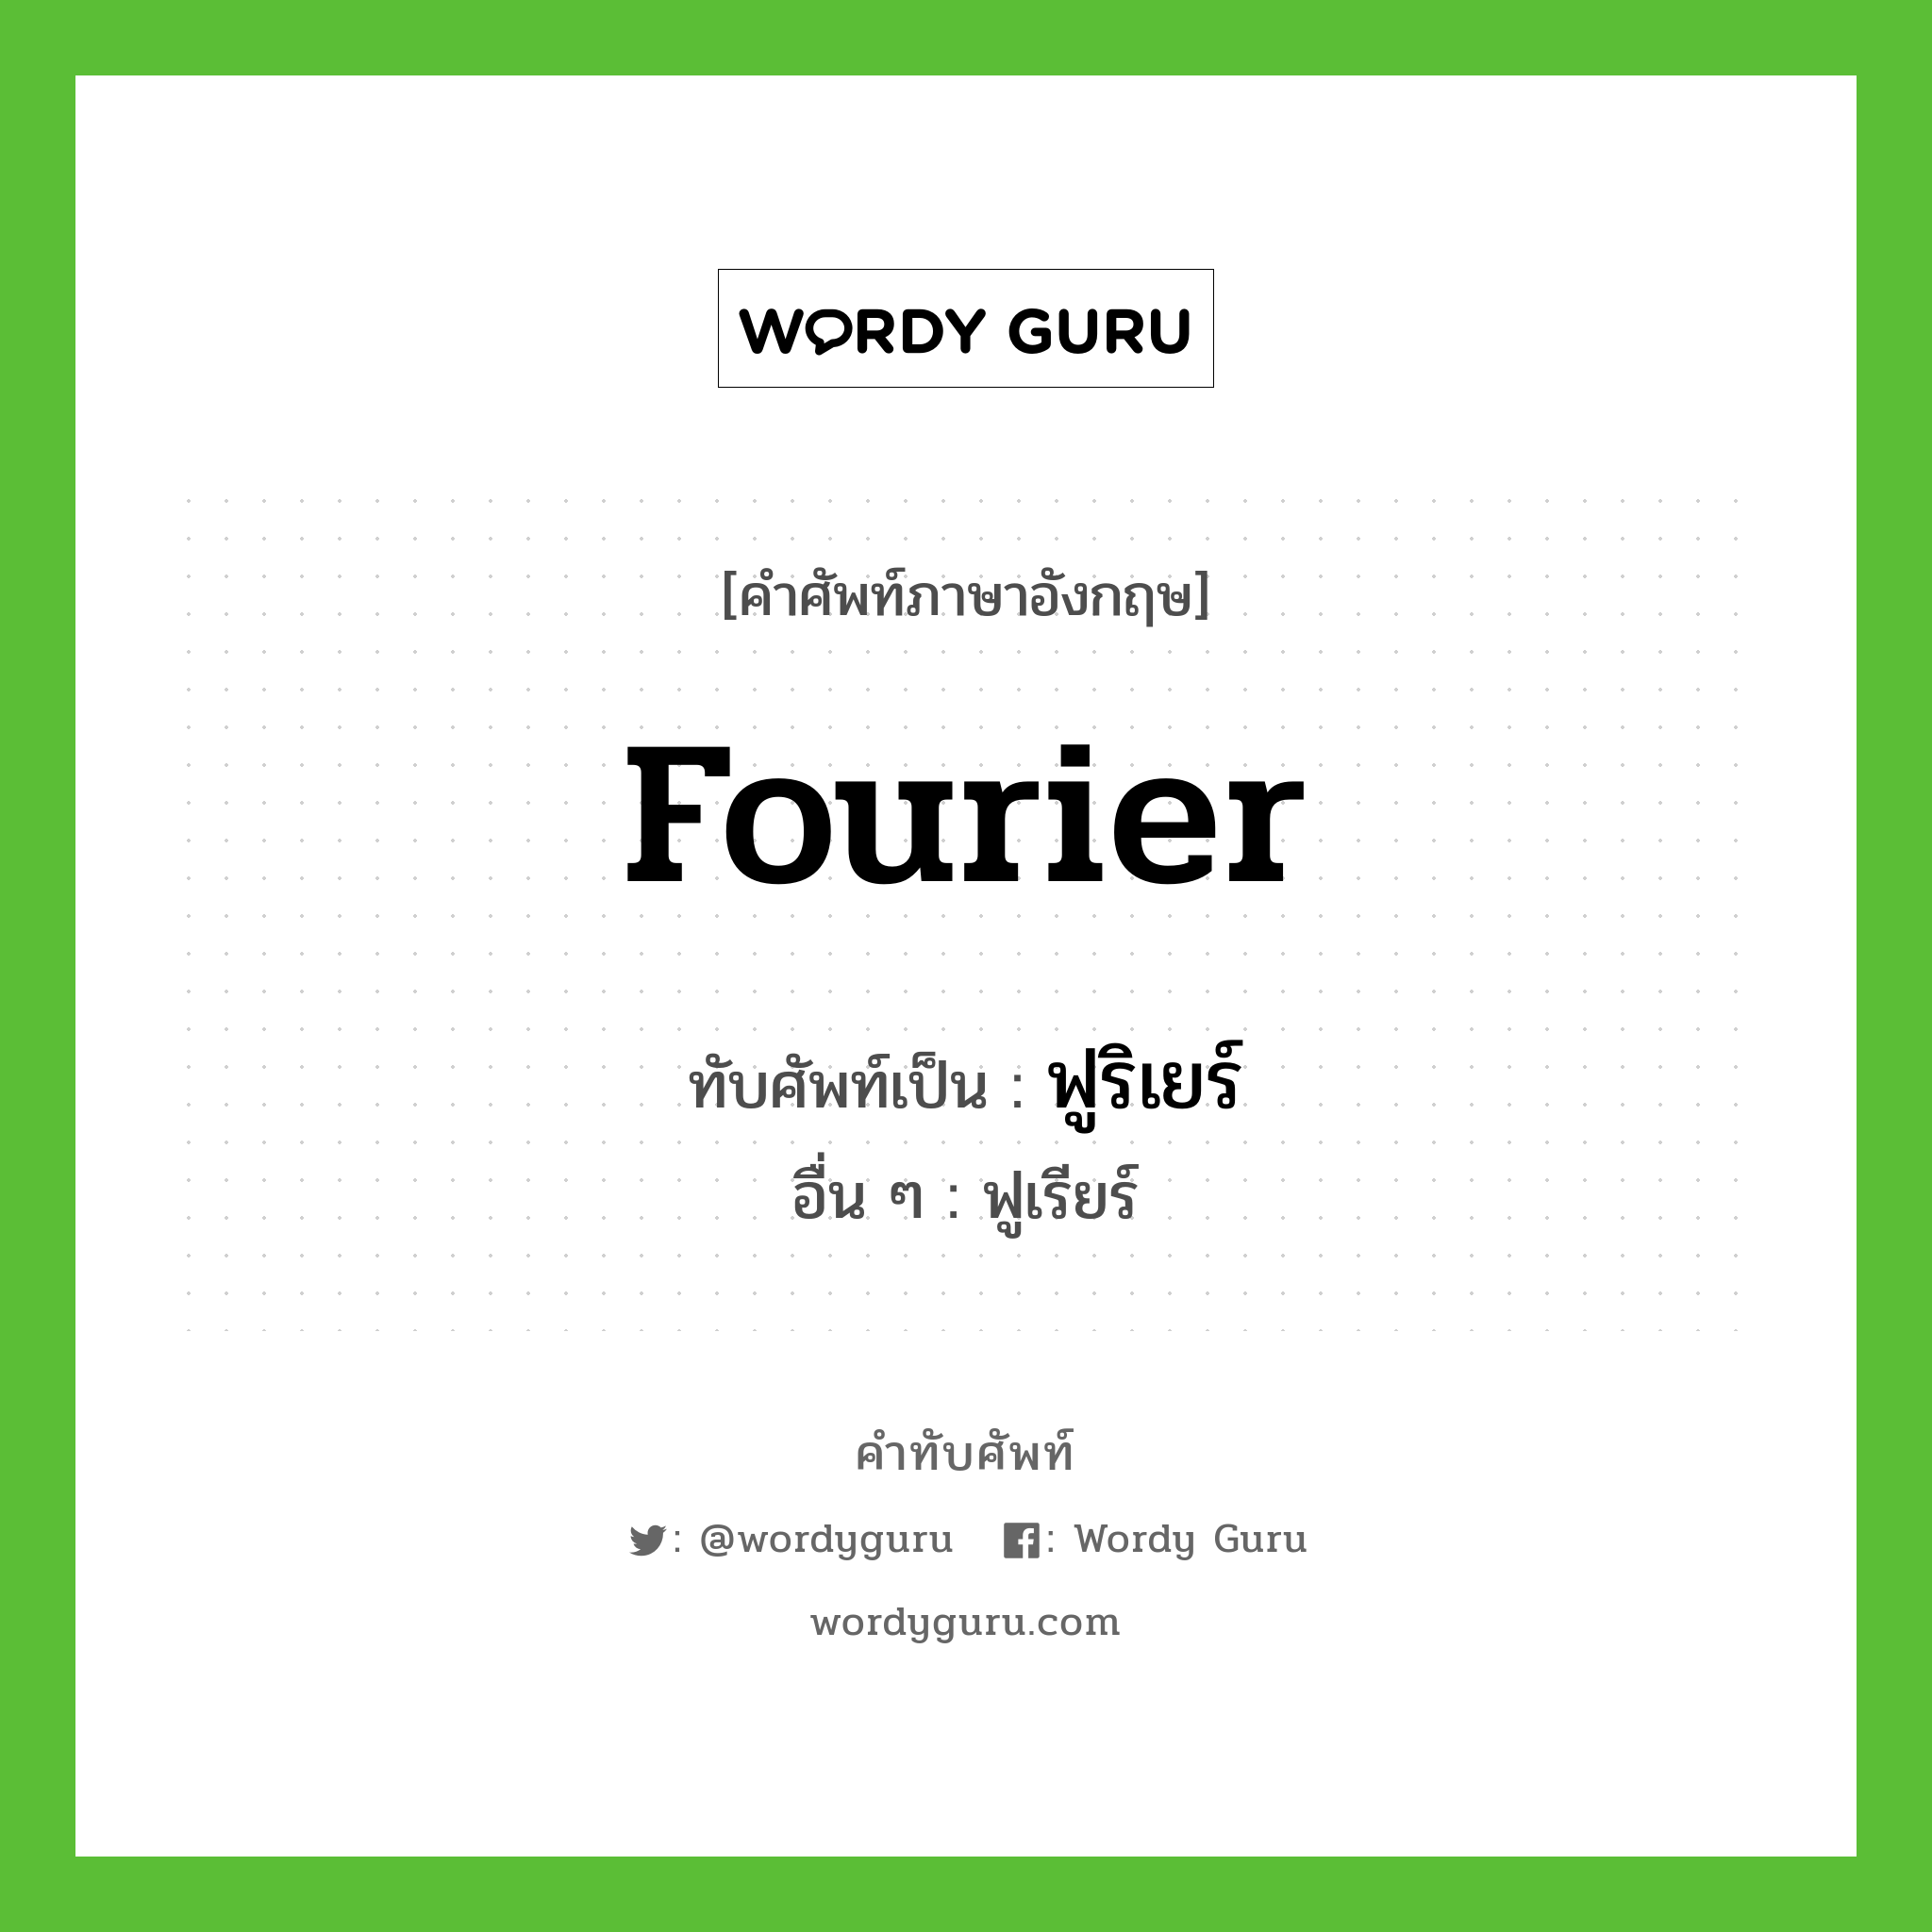 ฟูริเยร์ เขียนอย่างไร?, คำศัพท์ภาษาอังกฤษ ฟูริเยร์ ทับศัพท์เป็น Fourier อื่น ๆ ฟูเรียร์